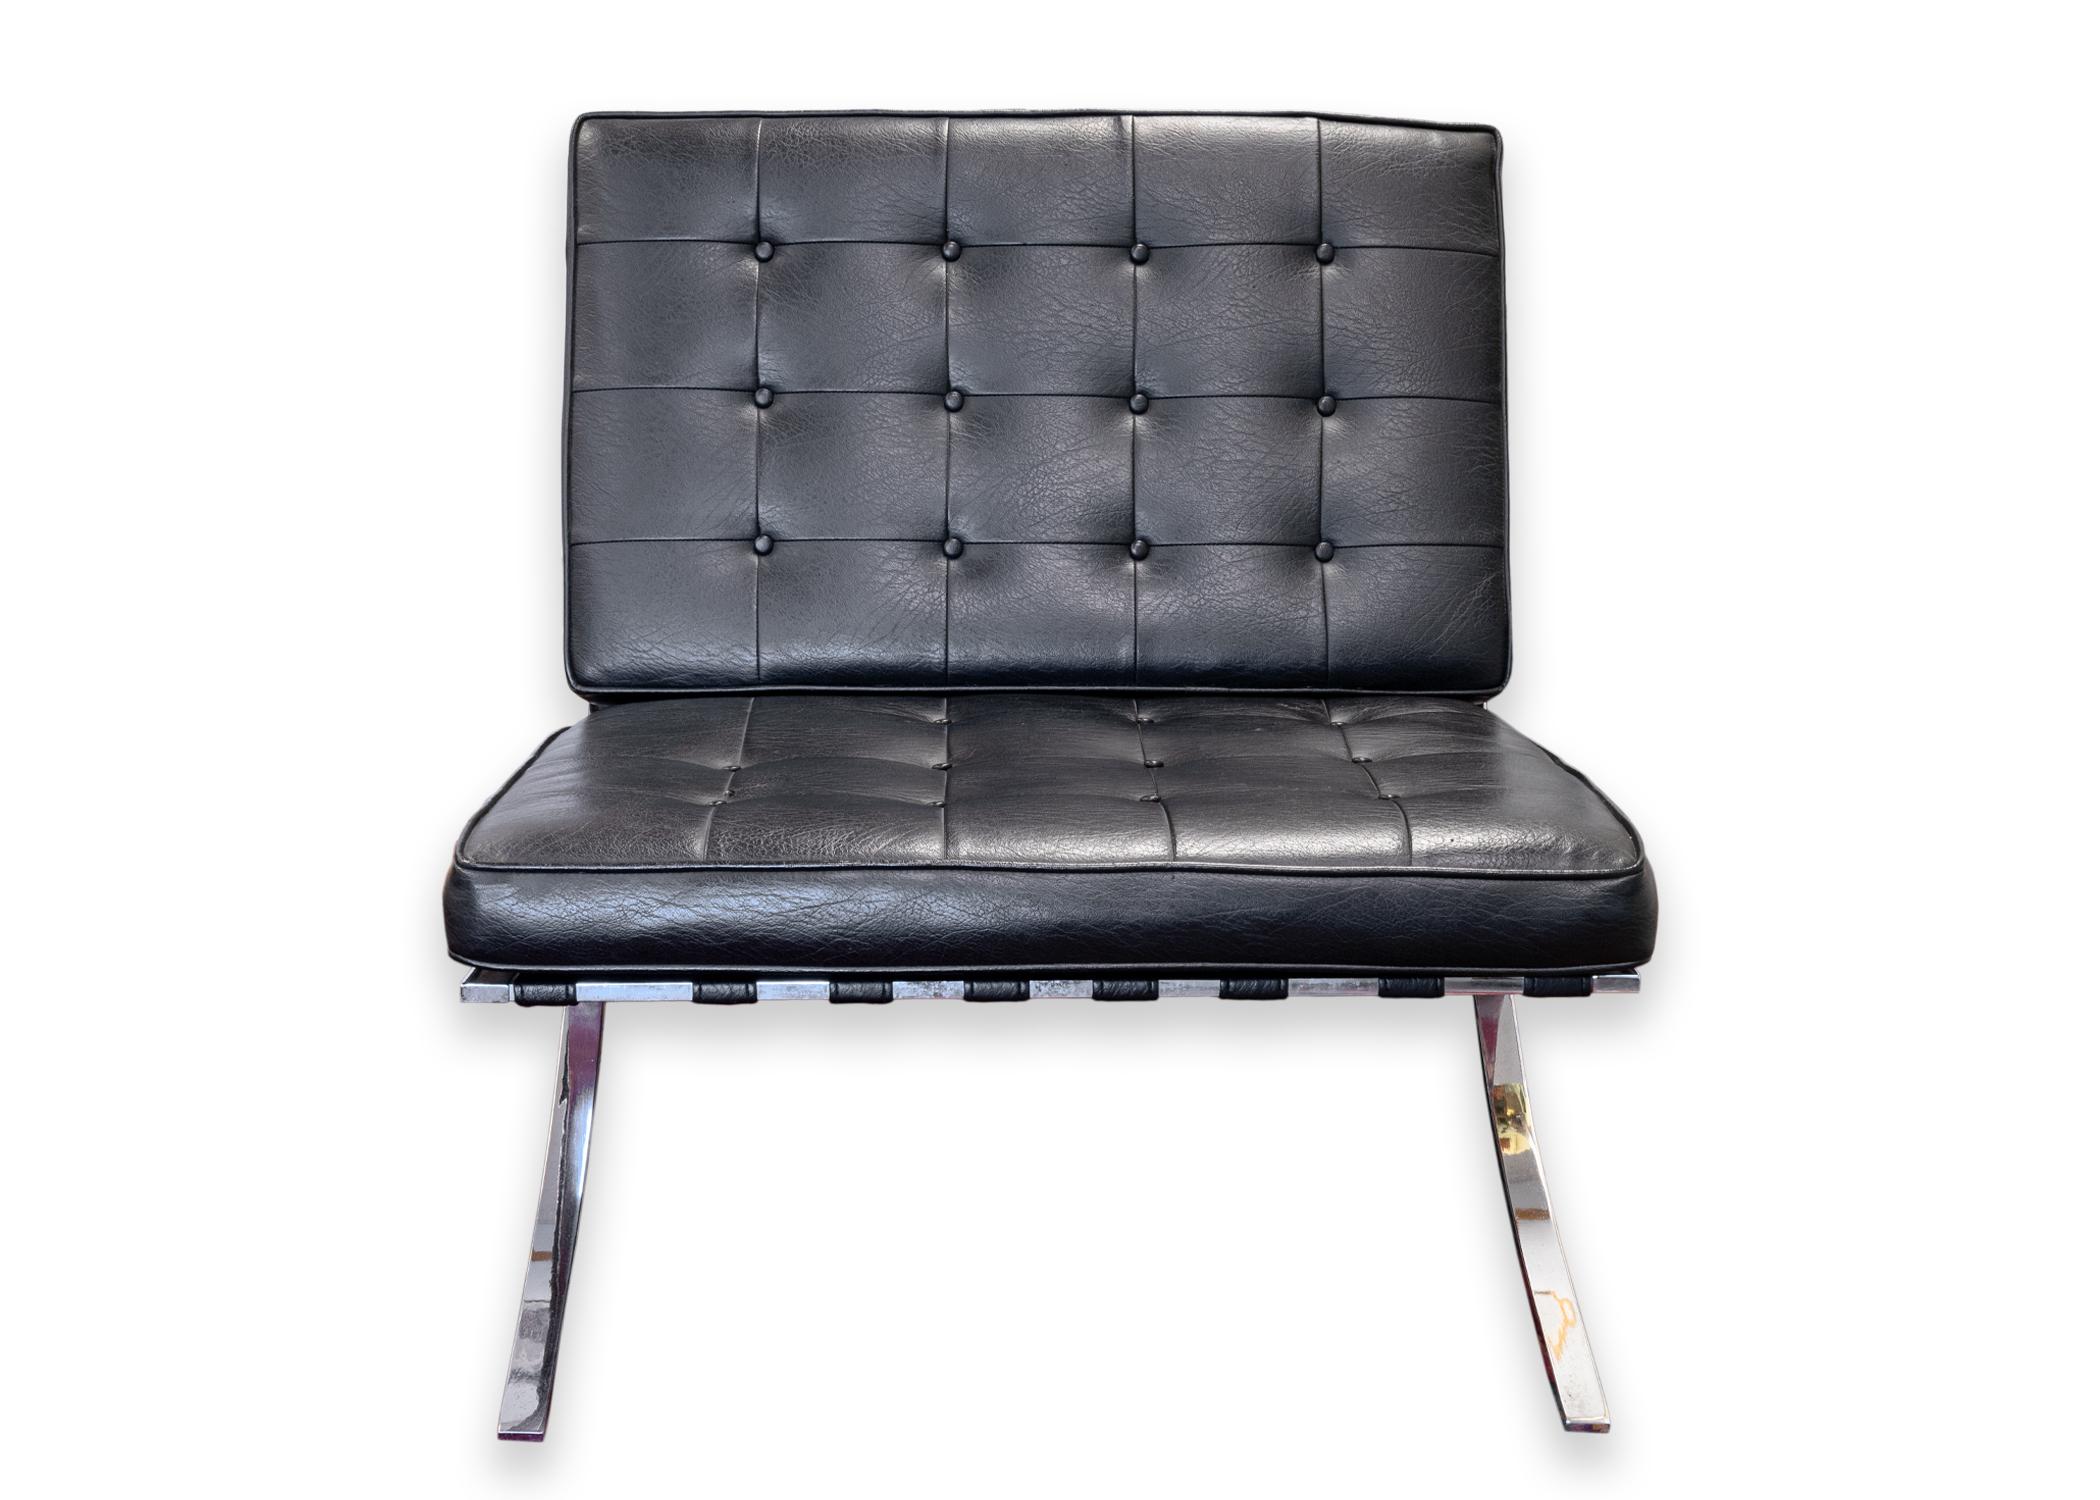 Paire de chaises d'appoint de style Barcelone de Mies van der Rohe. Une paire de chaises de Barcelone de très haute qualité. Ces chaises sont dotées d'une assise et d'un dossier en cuir noir tufté et d'une structure en métal poli. Le siège et le